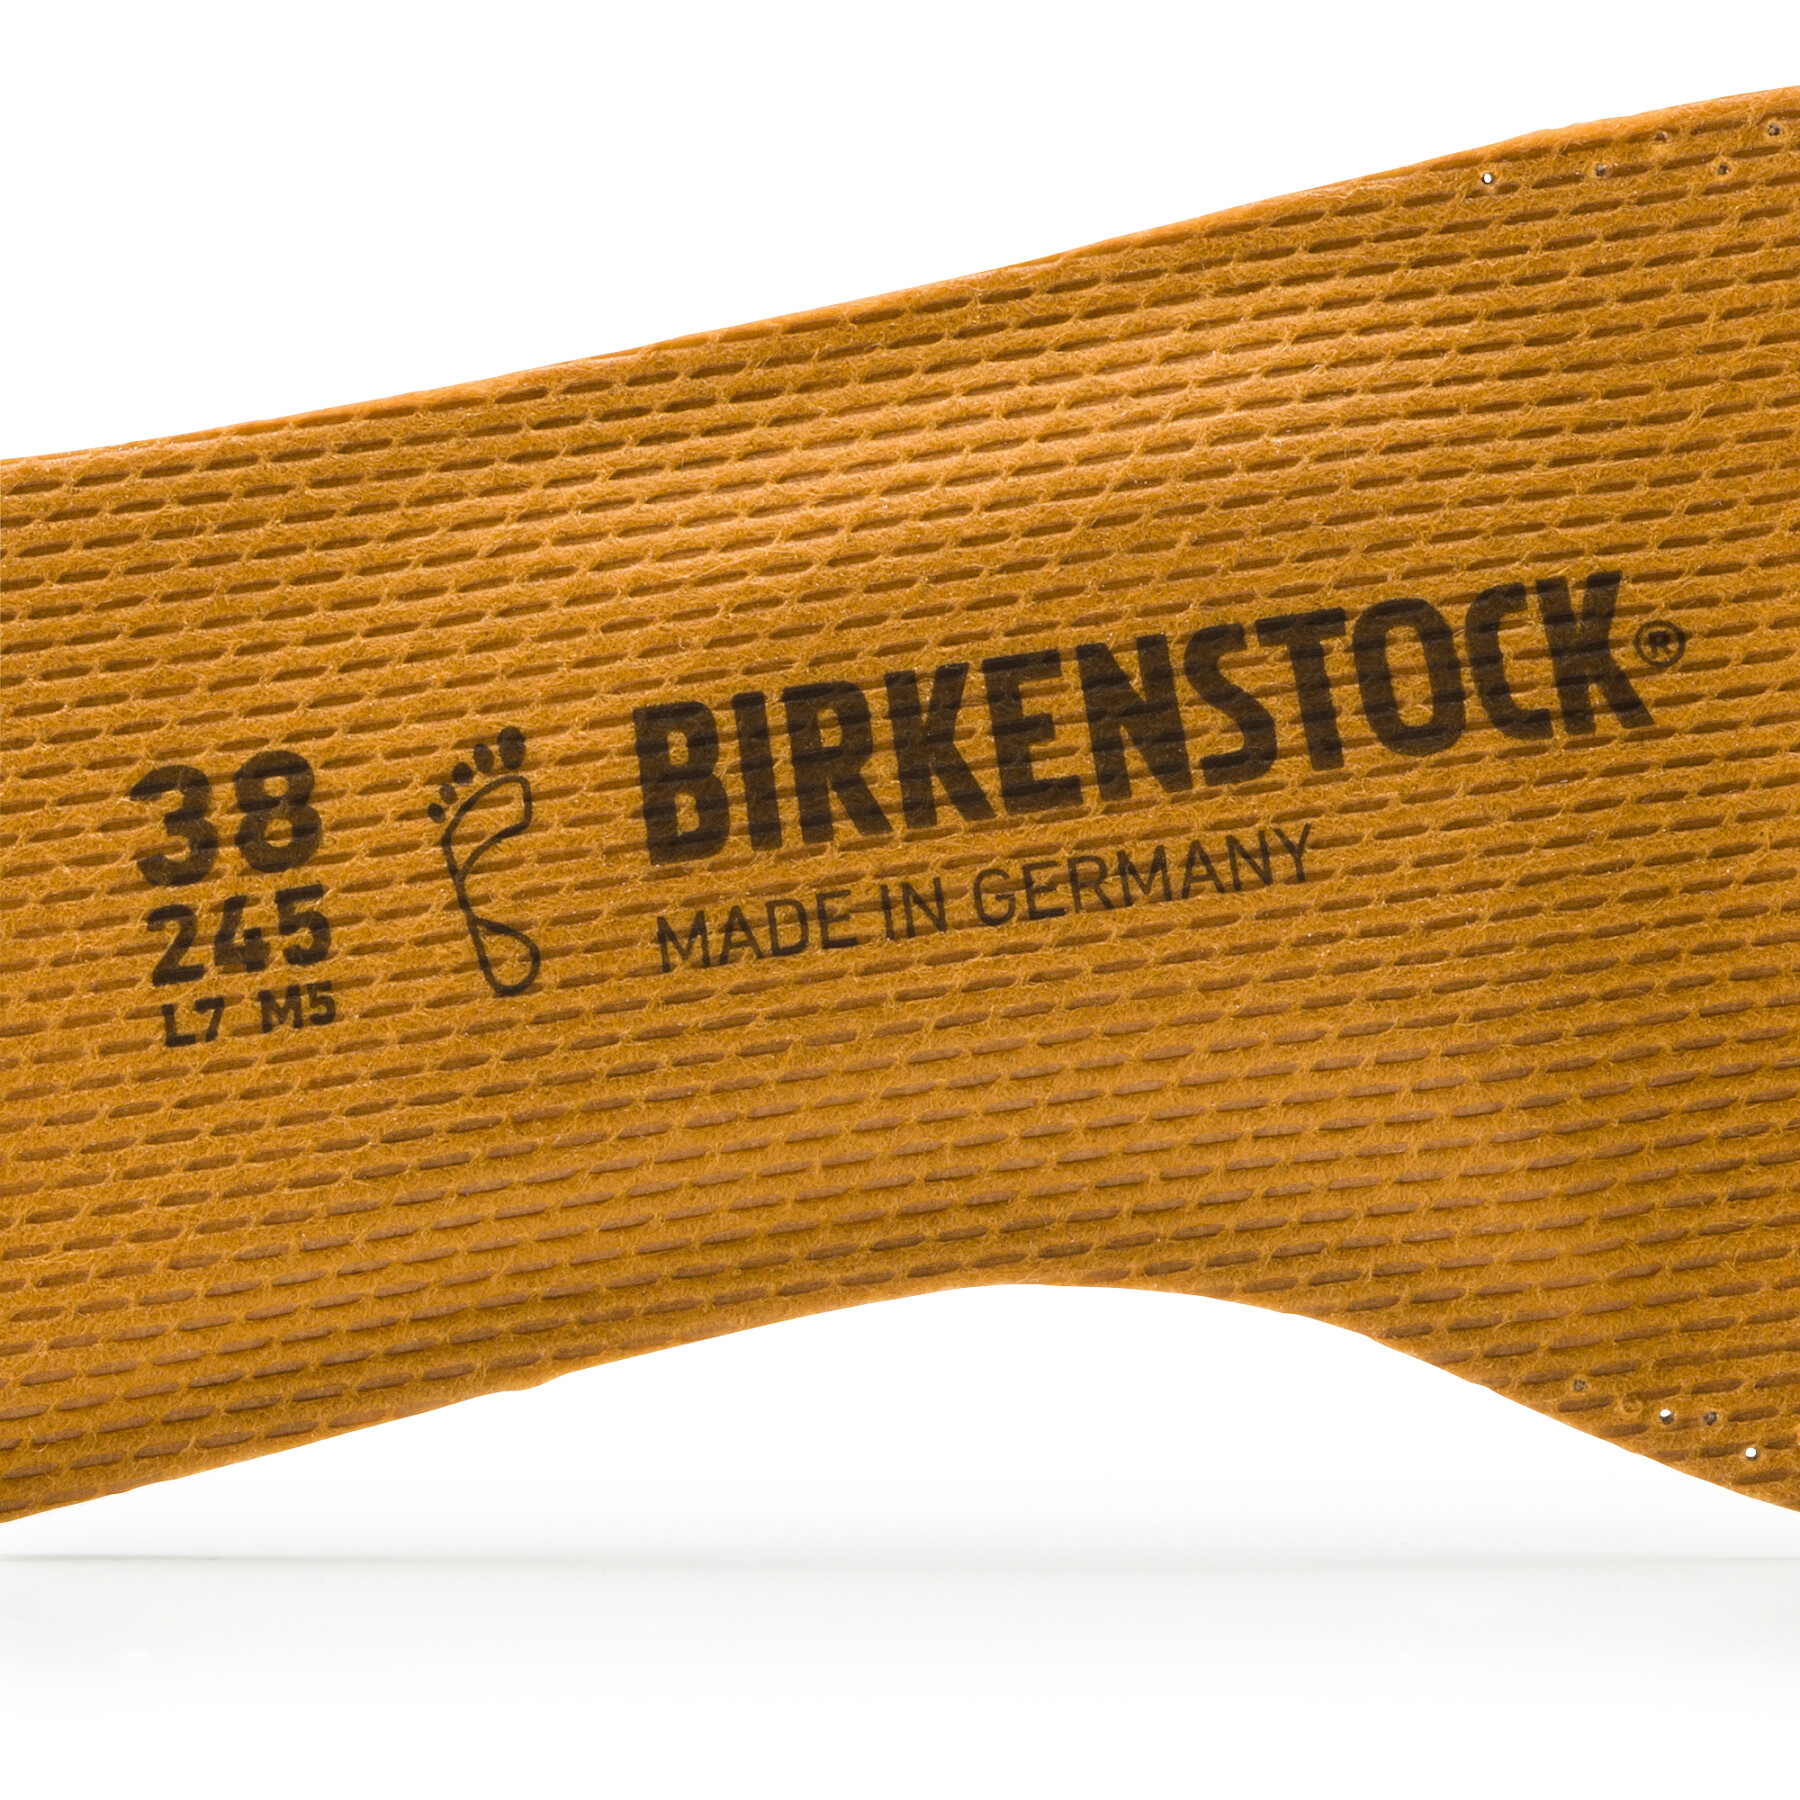 Solas Birkenstock Comfort Birko Tex